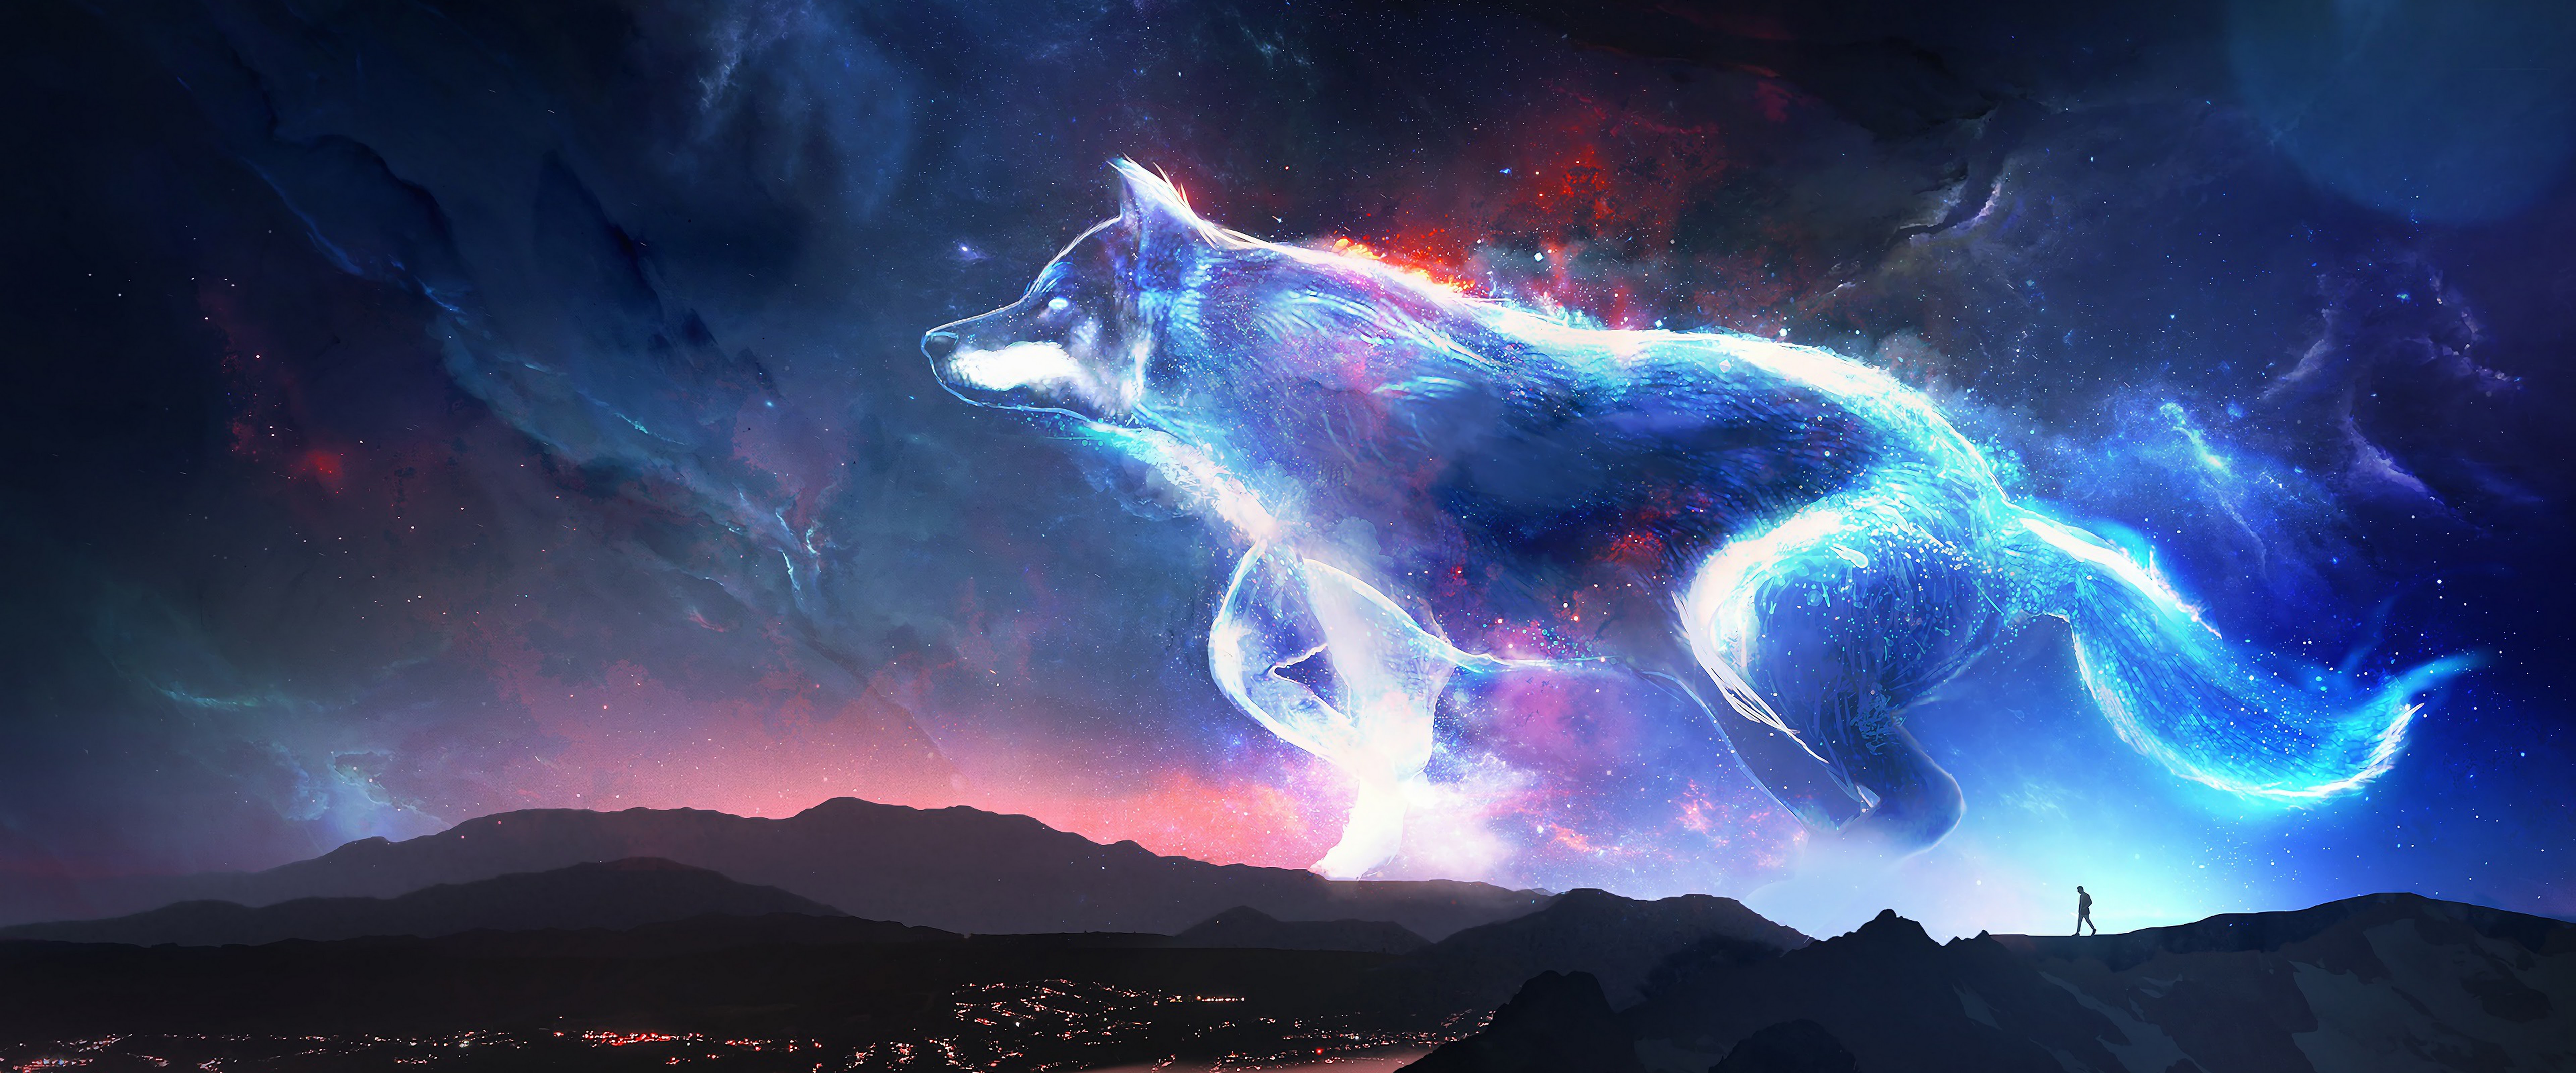 Wolf Fantasy Art 4k Wallpaper